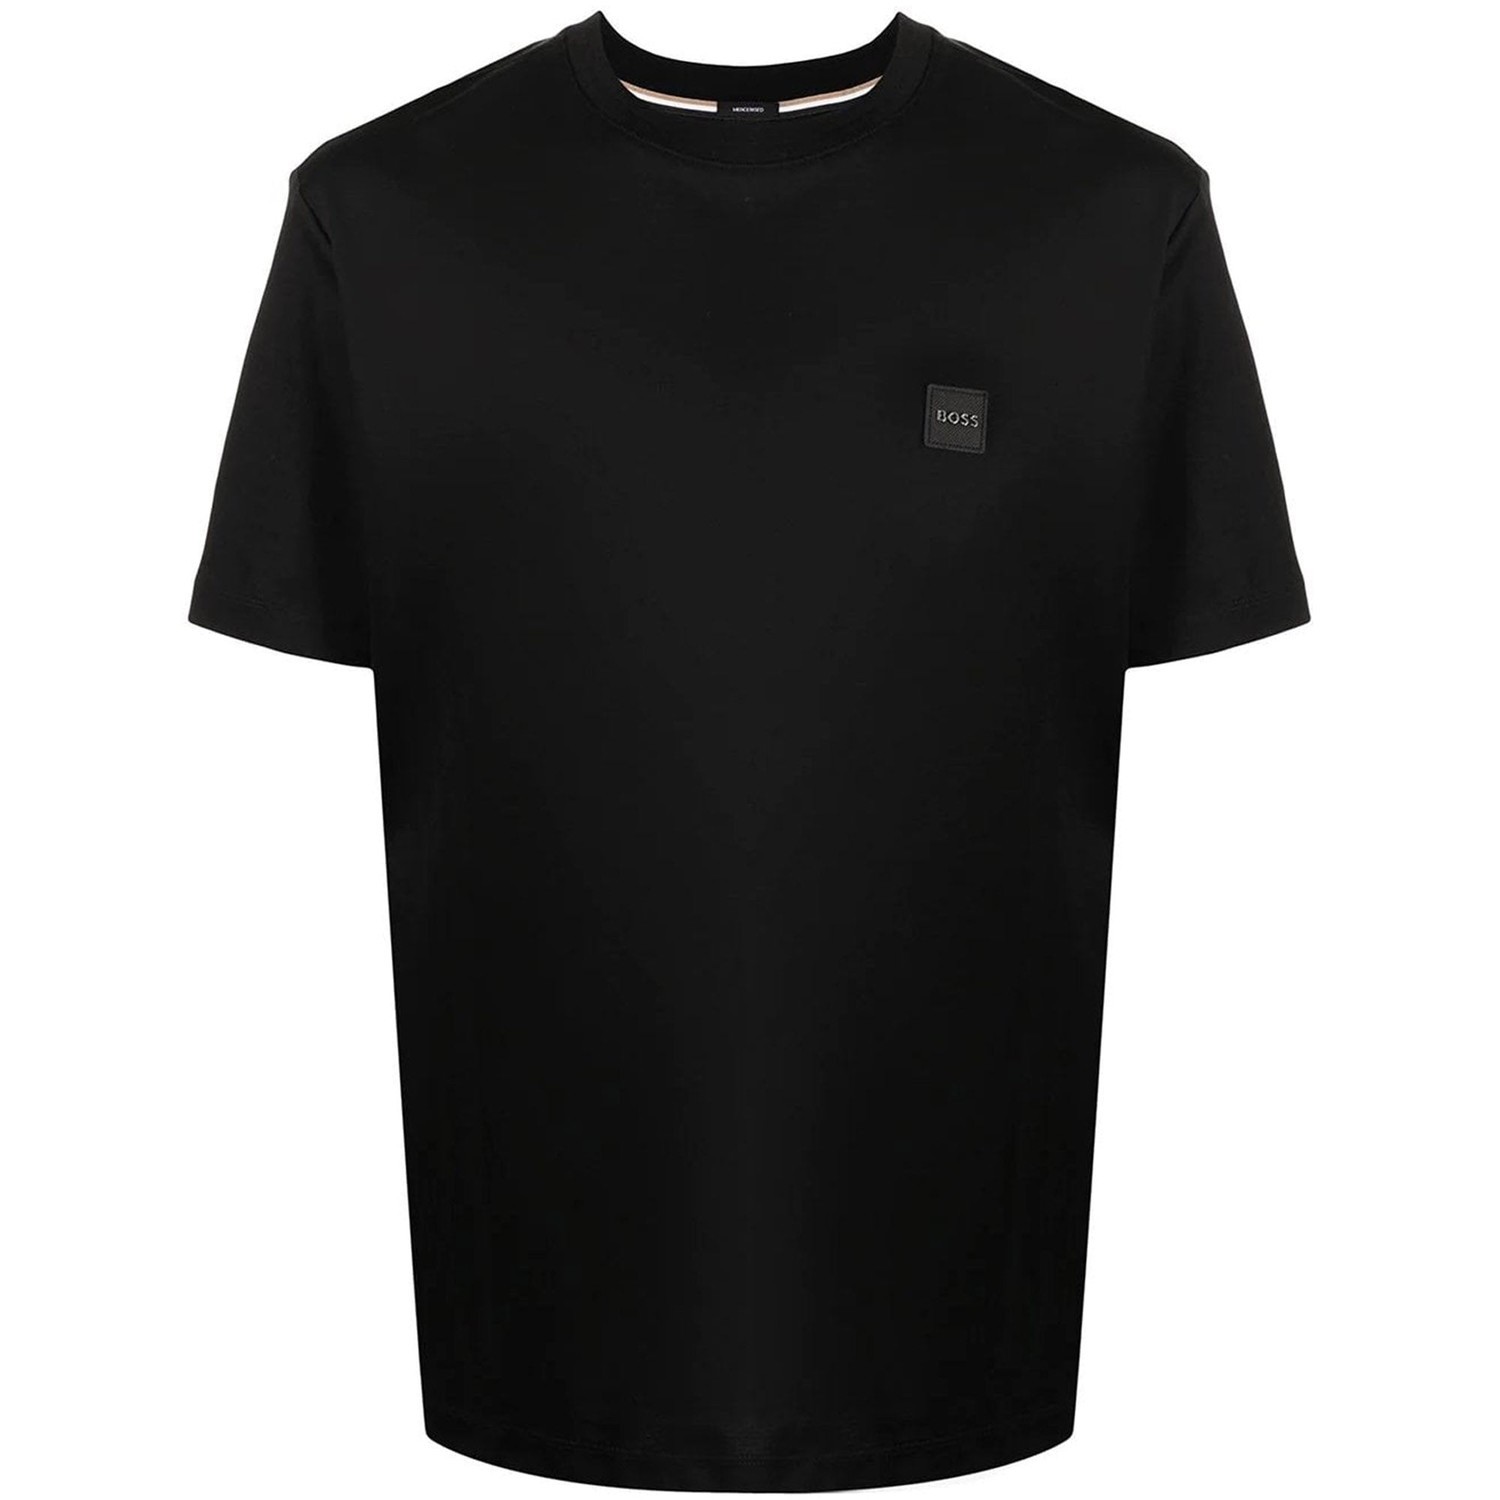 Hugo Boss Mens T Shirt Square Chest Logo Black S